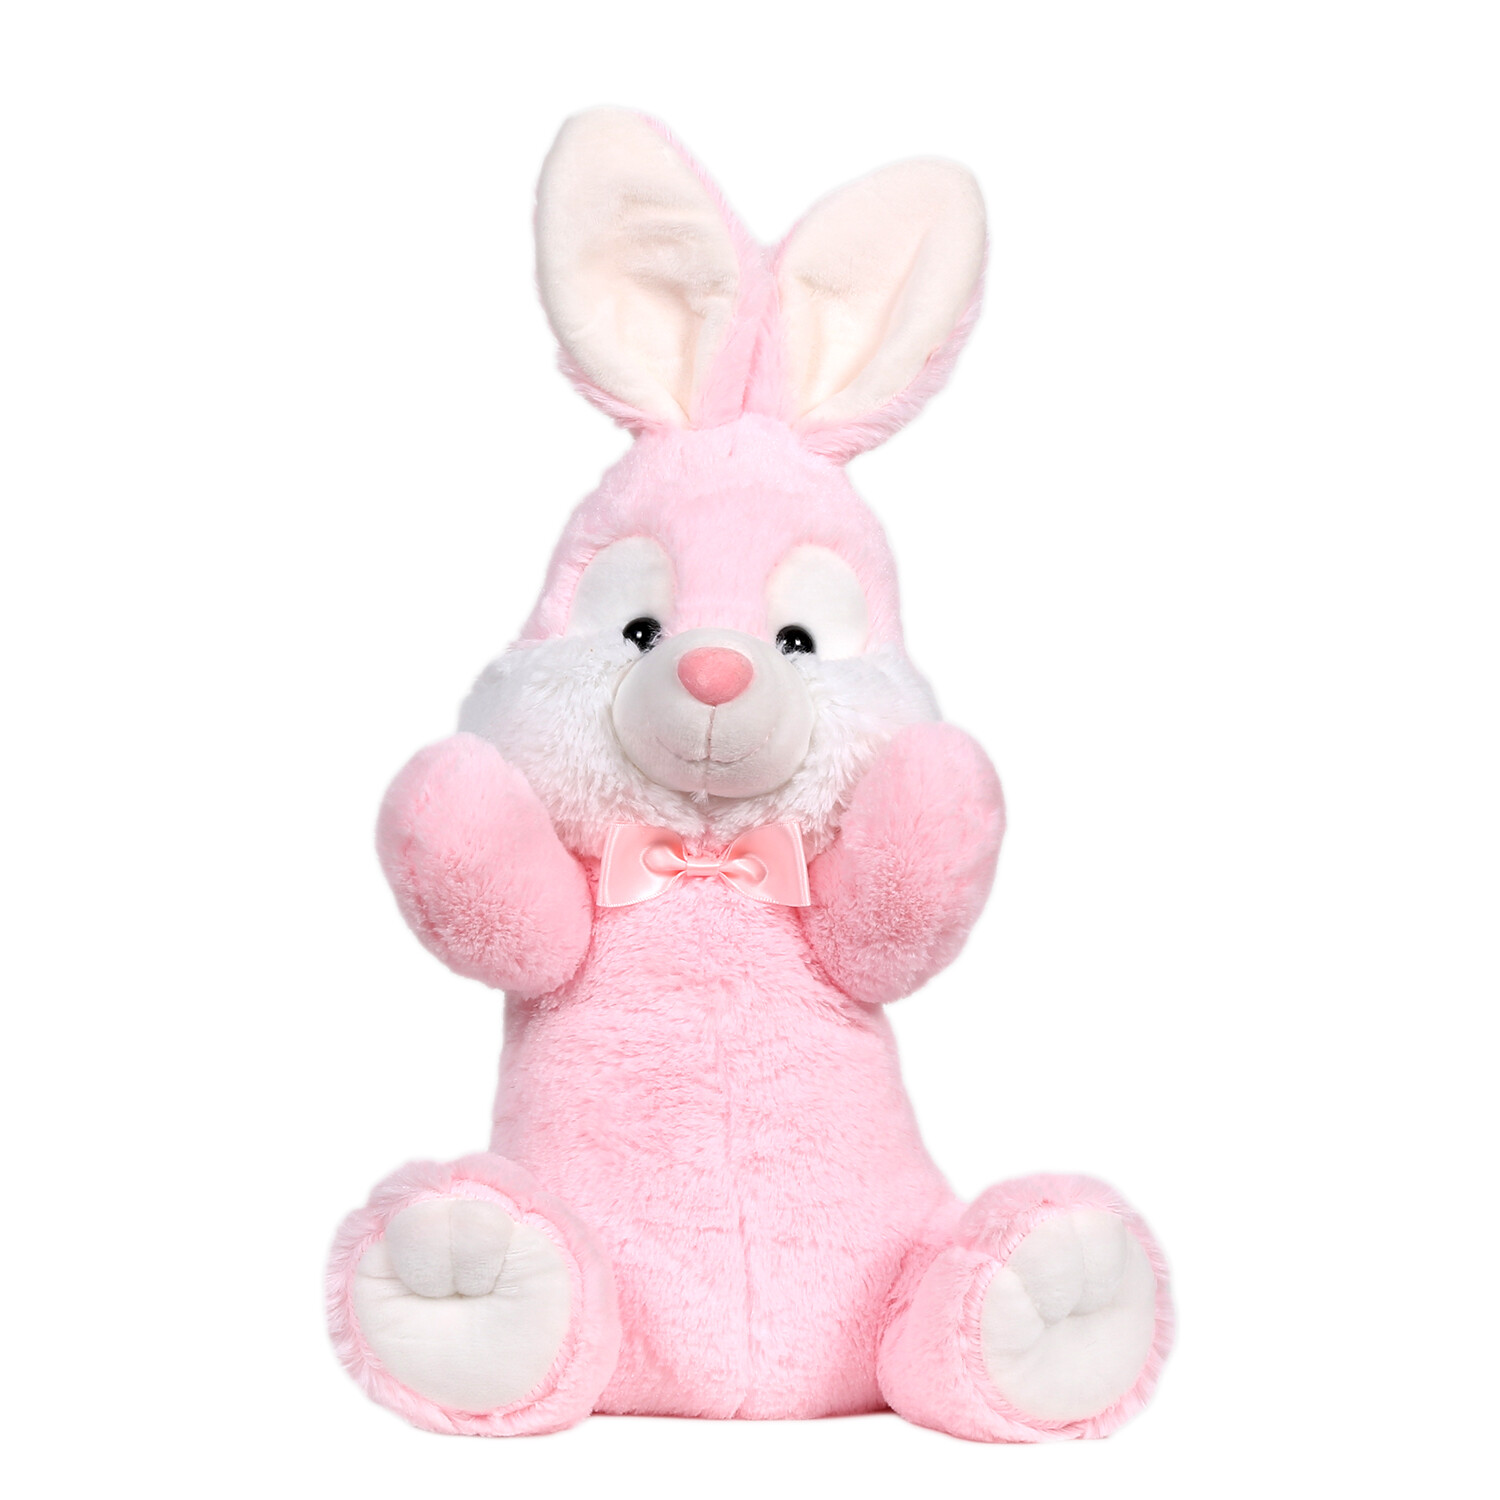 Plush Bunny Rabbit Image 2